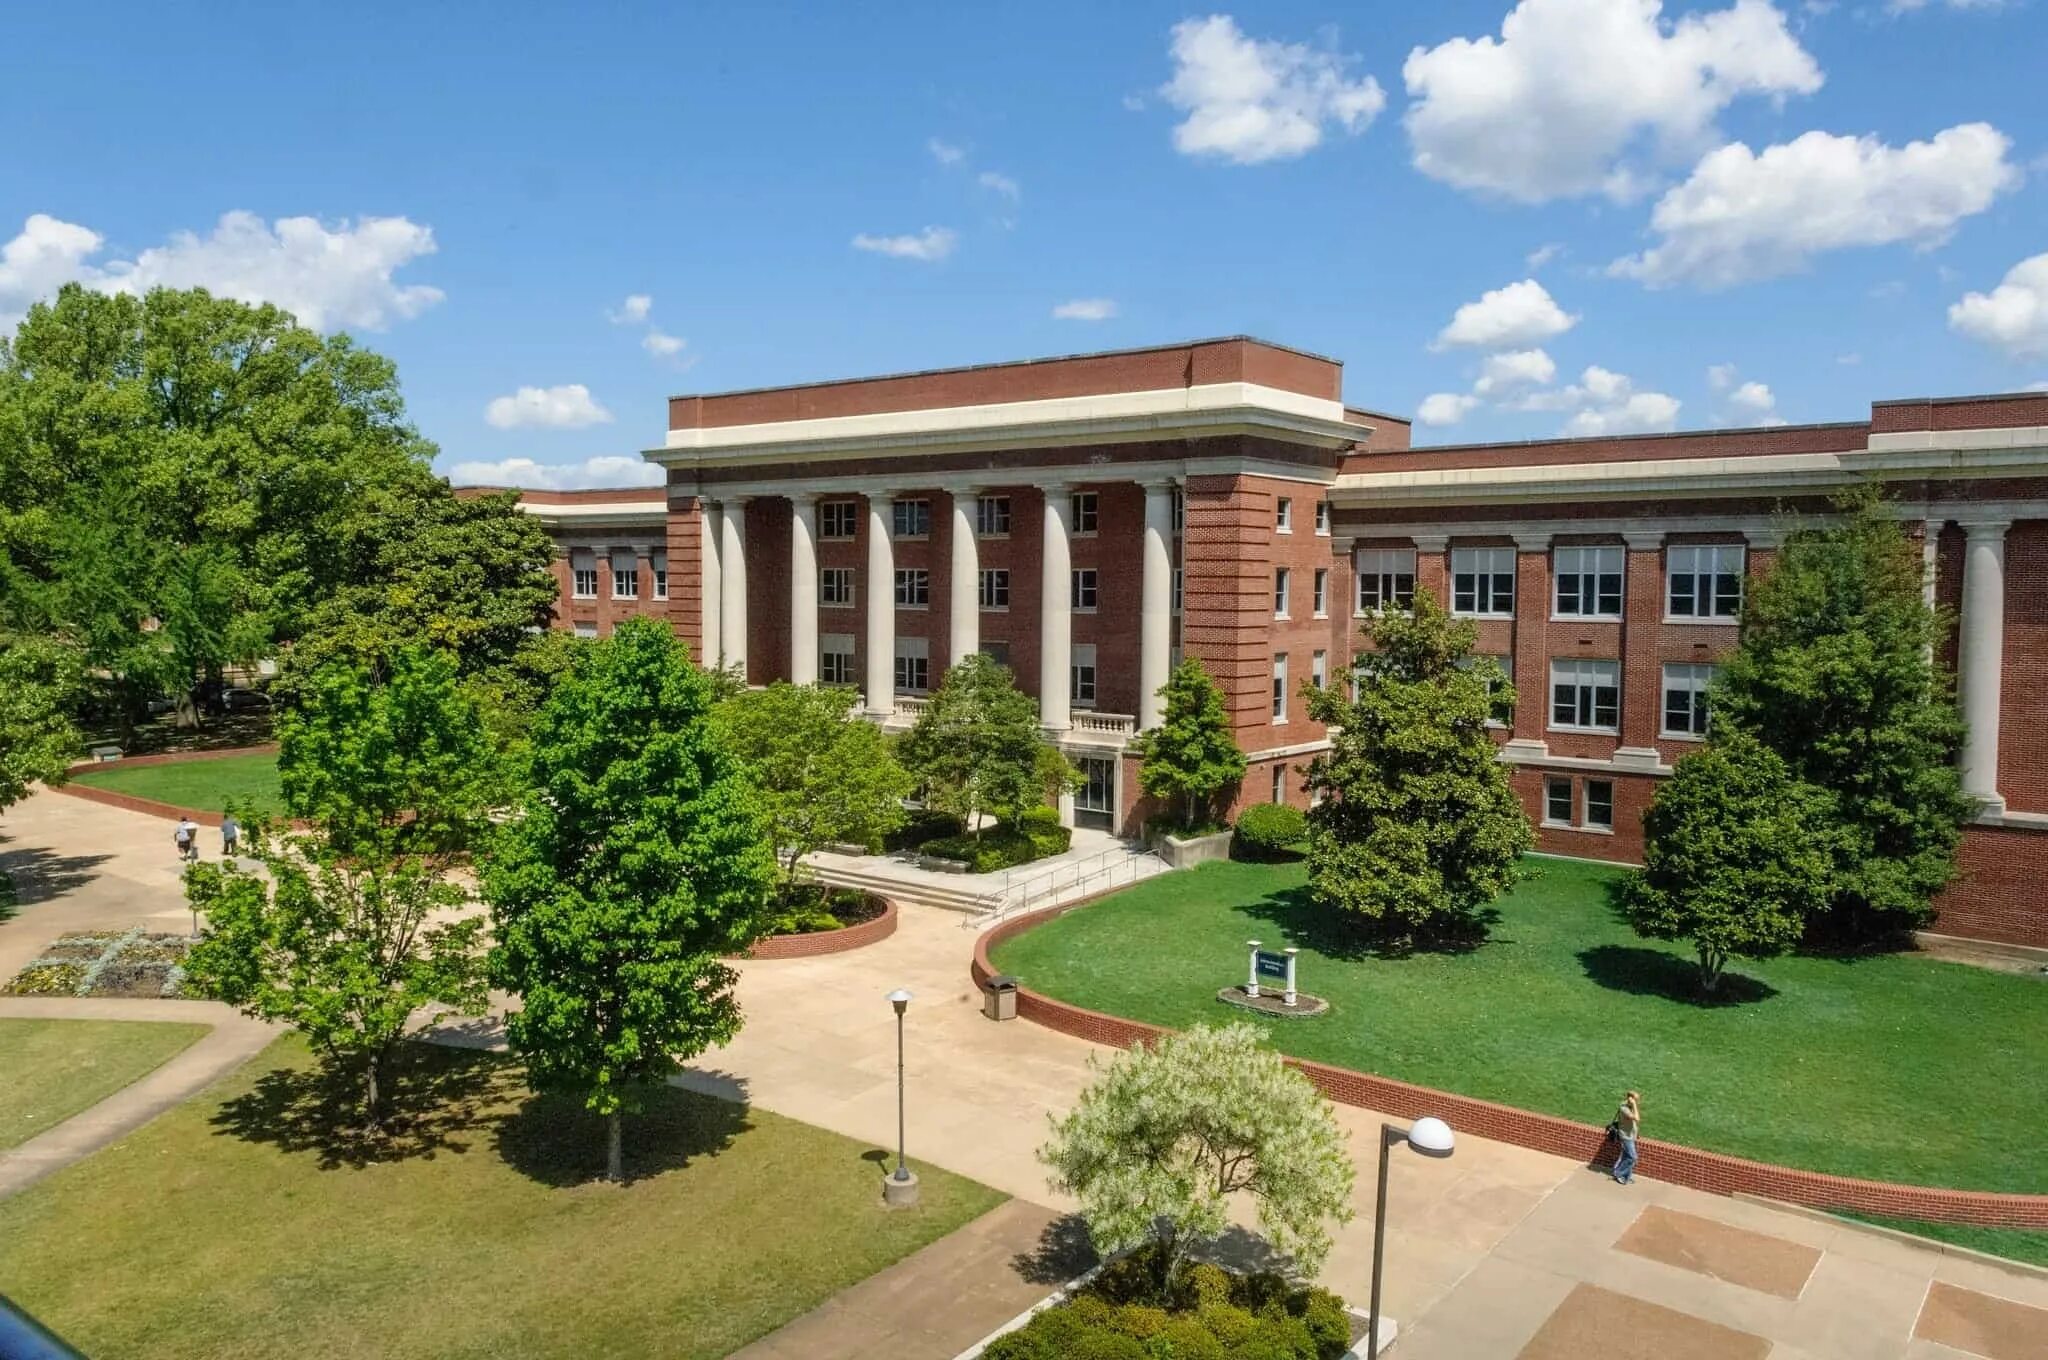 Мемфис США колледж. The University of Memphis общежитие. University of North Carolina Greensboro. The University of Memphis рейтинг.